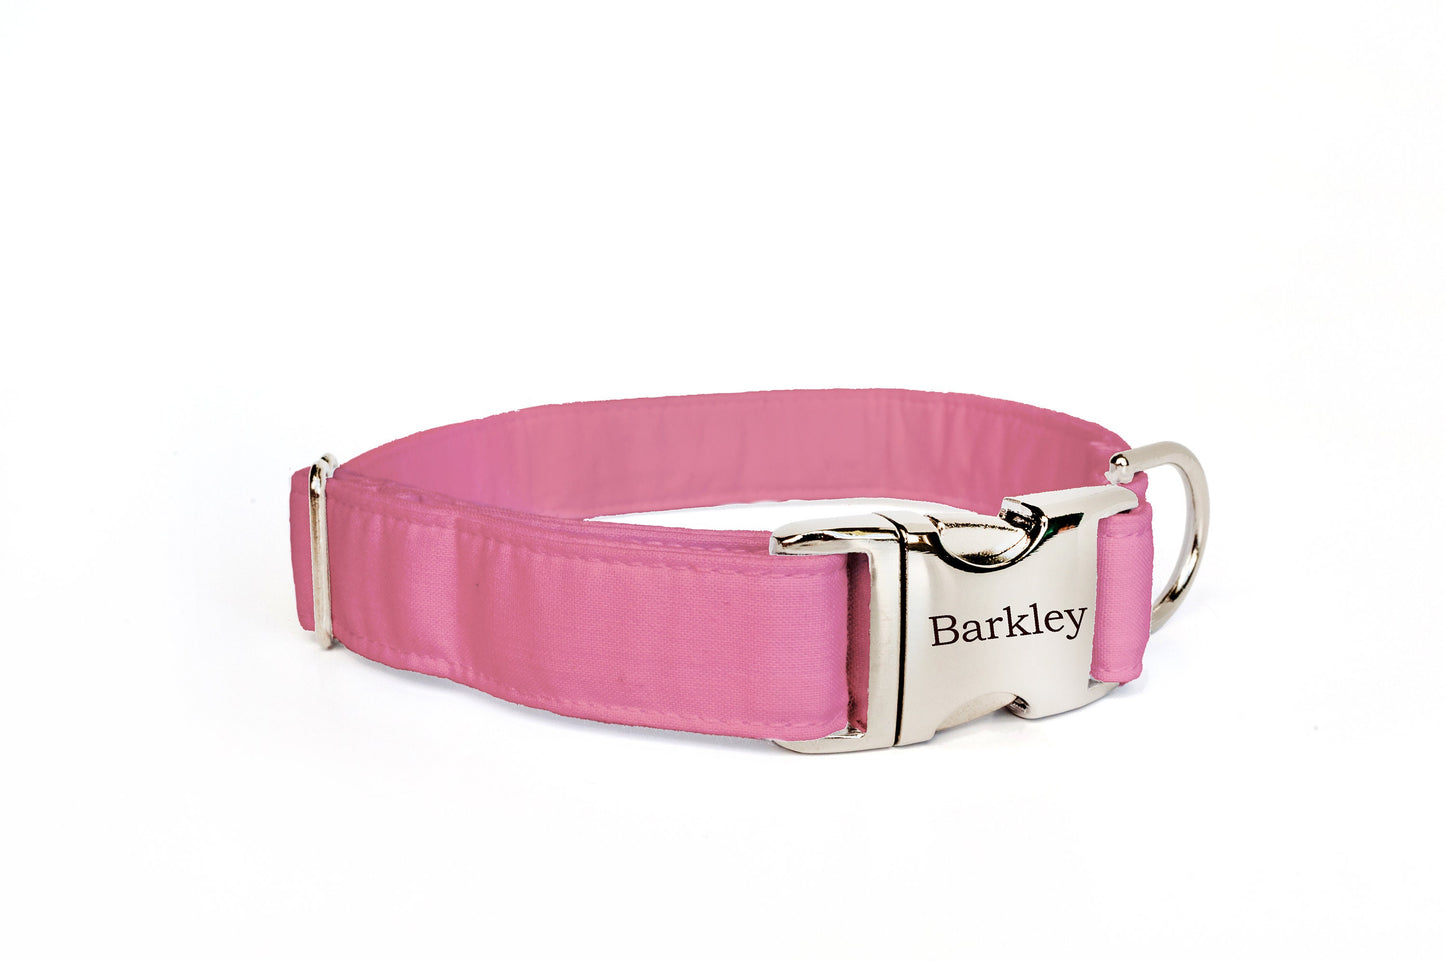 Large Dog Collar, Cute Dog Collar, Girl Dog Collar, Pink Dog Collar, Engraved Dog Collar with Name